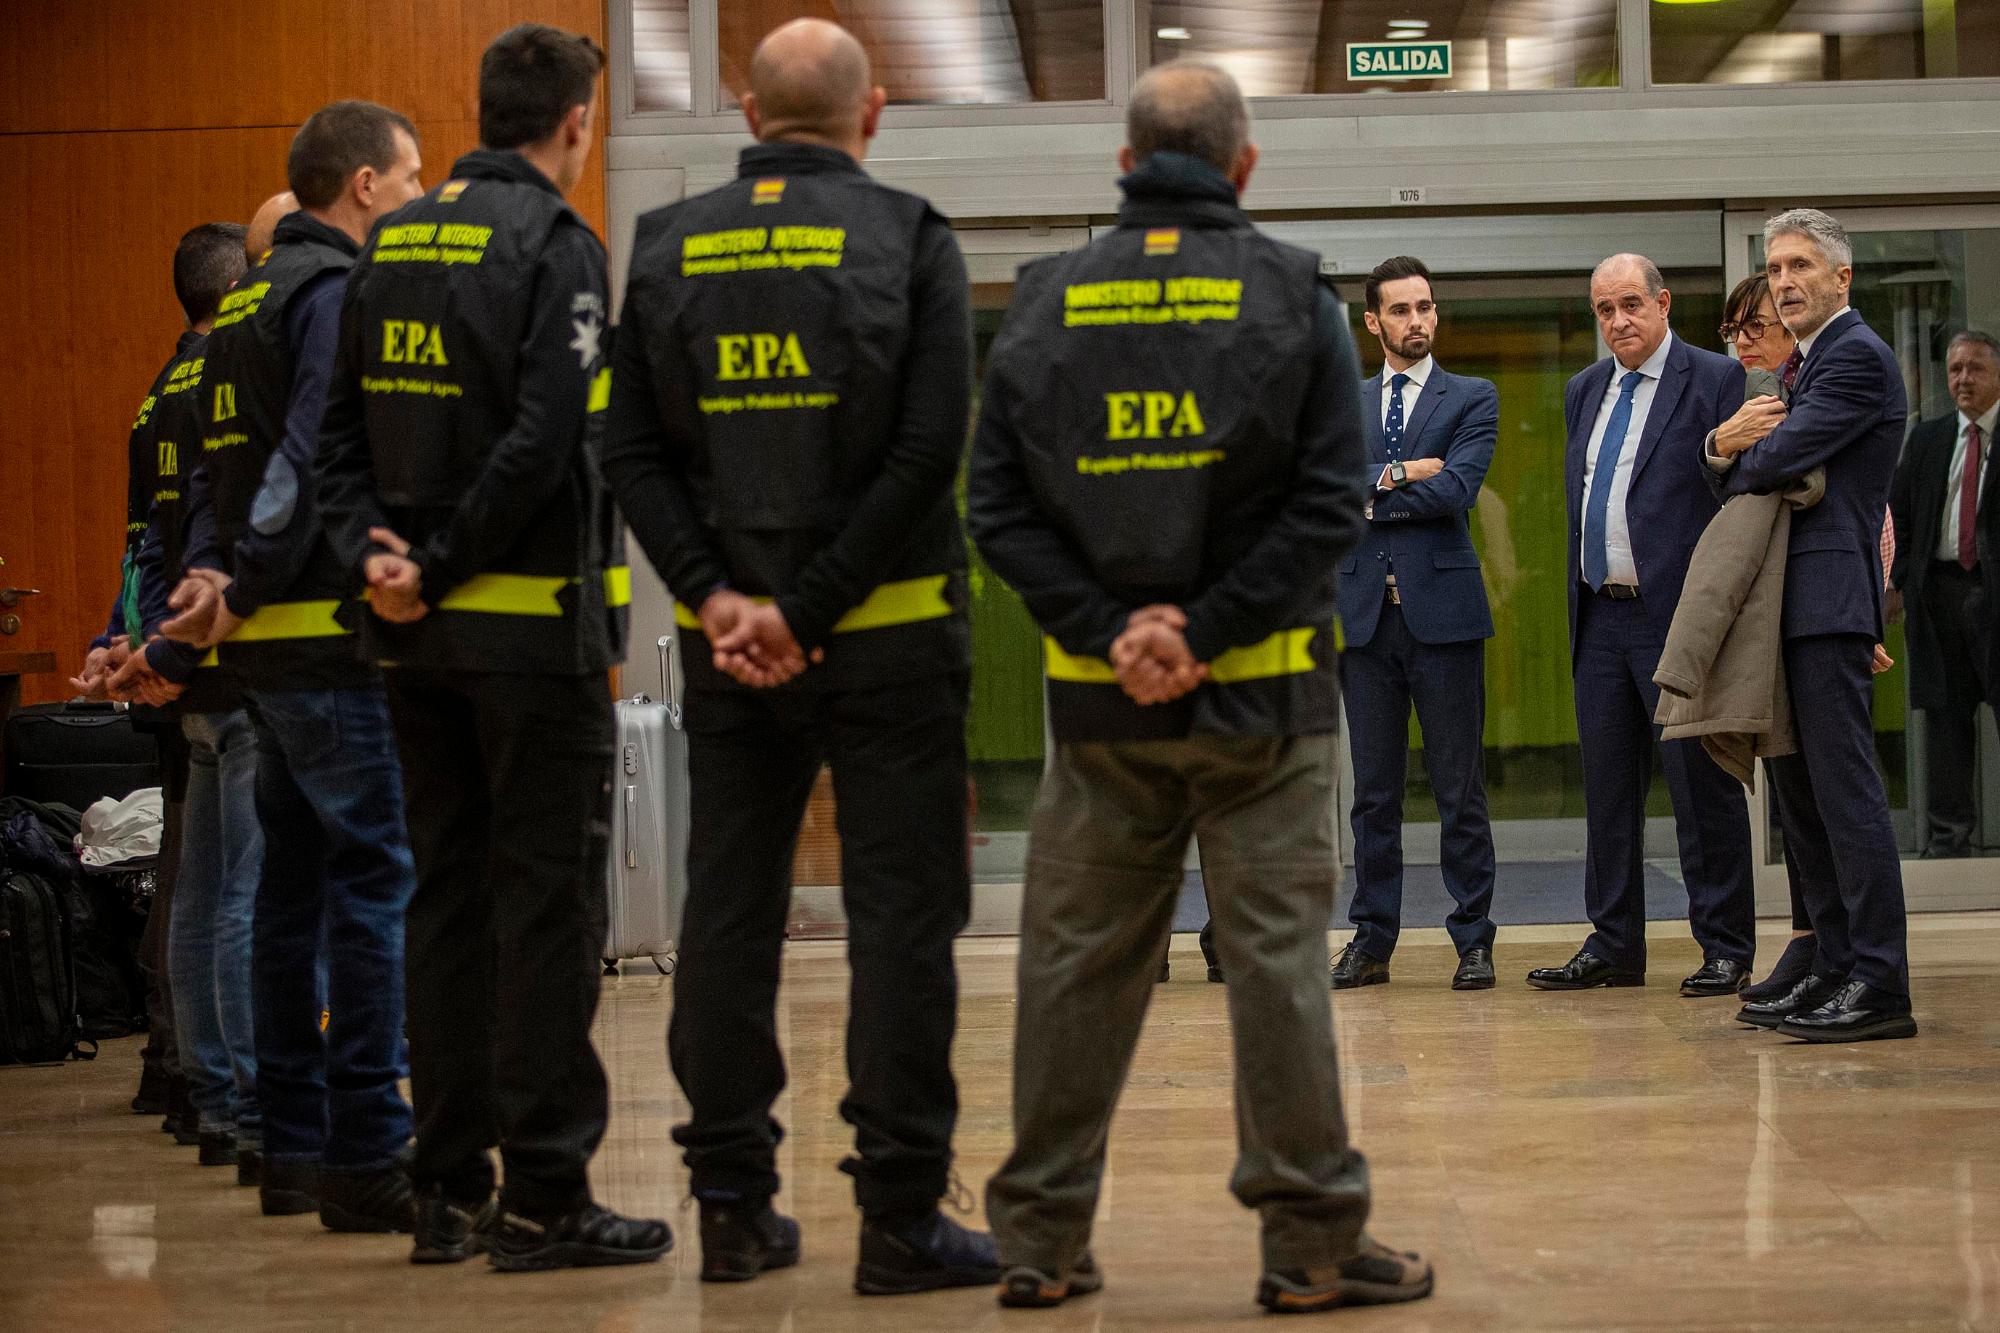 El ministro del interior y el Secretario de Estado de Seguridad con los miembros de la EPA antes de viajar a Ucrania